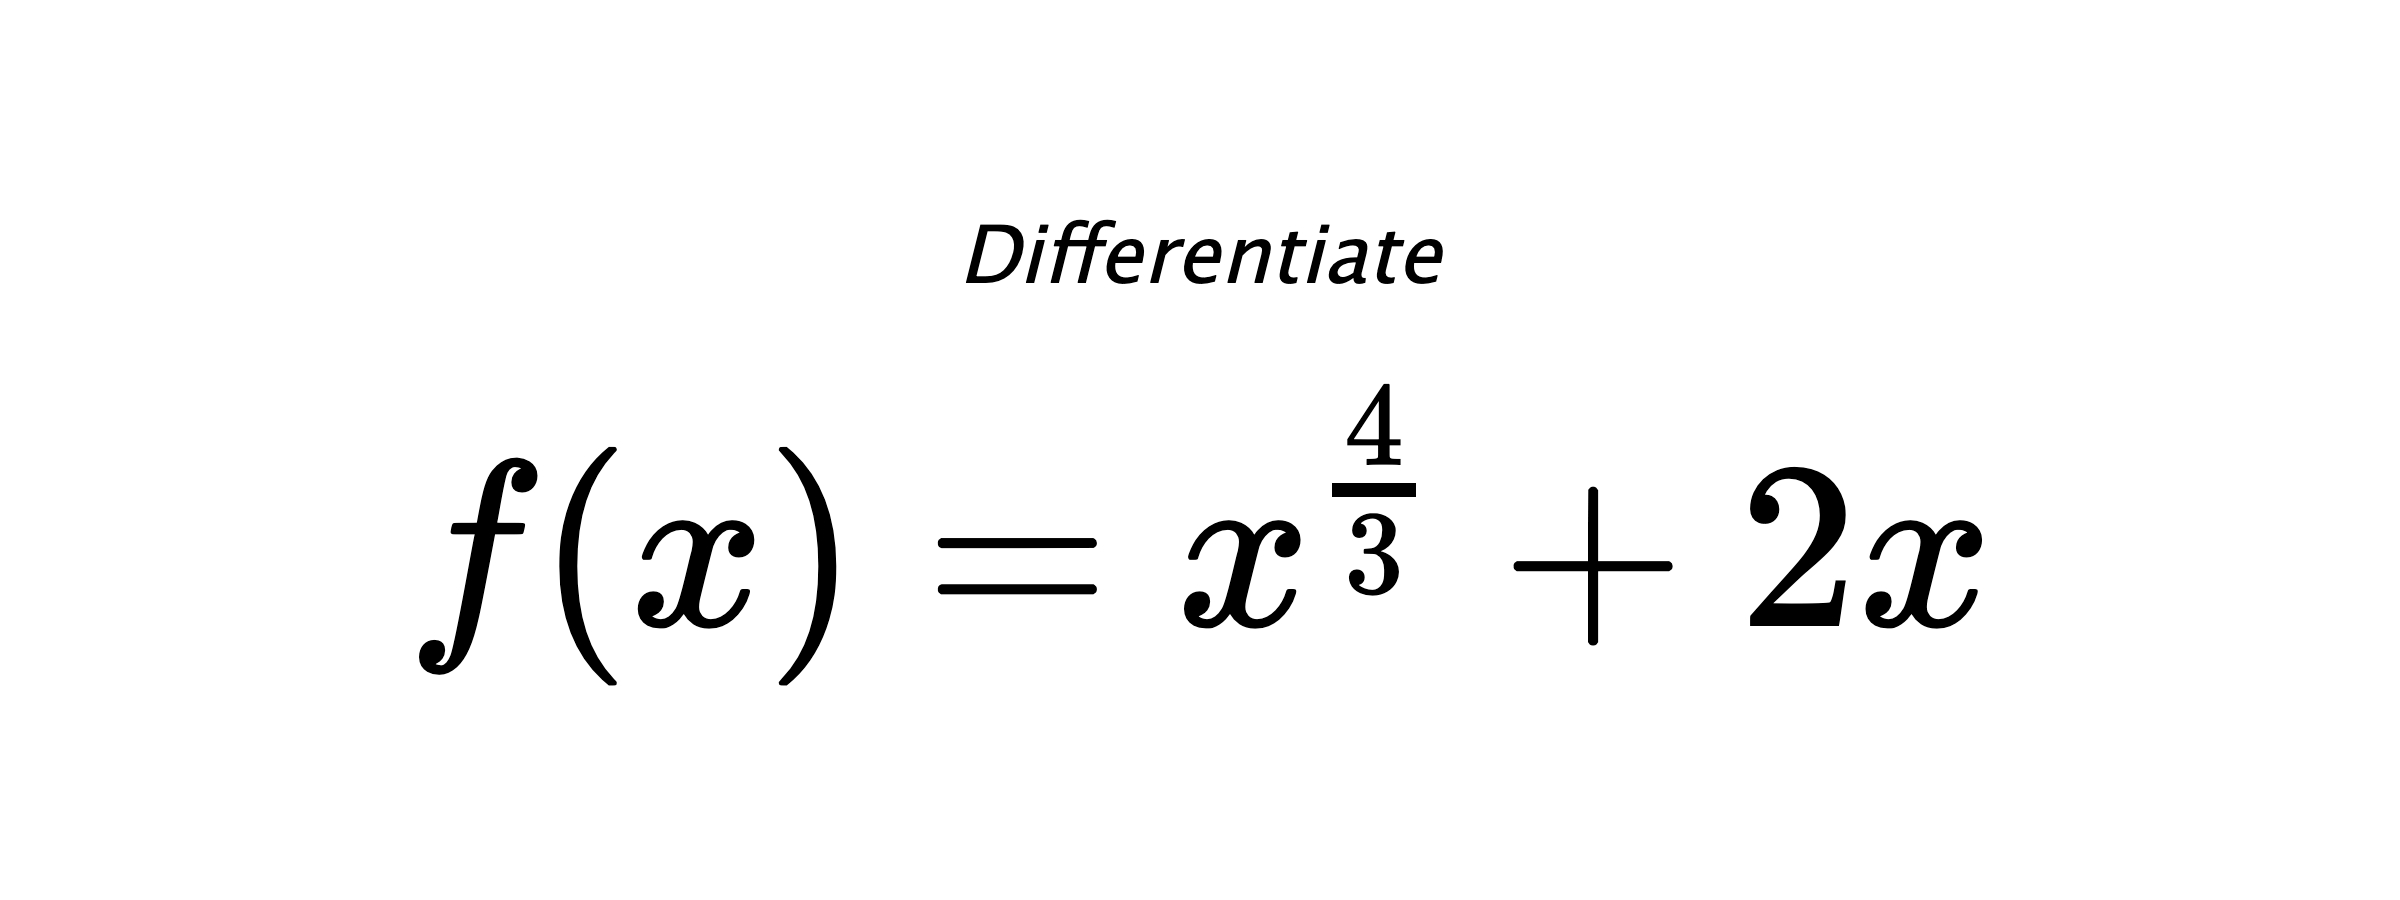 Differentiate $ f(x) = x^{\frac{4}{3}} + 2 x $